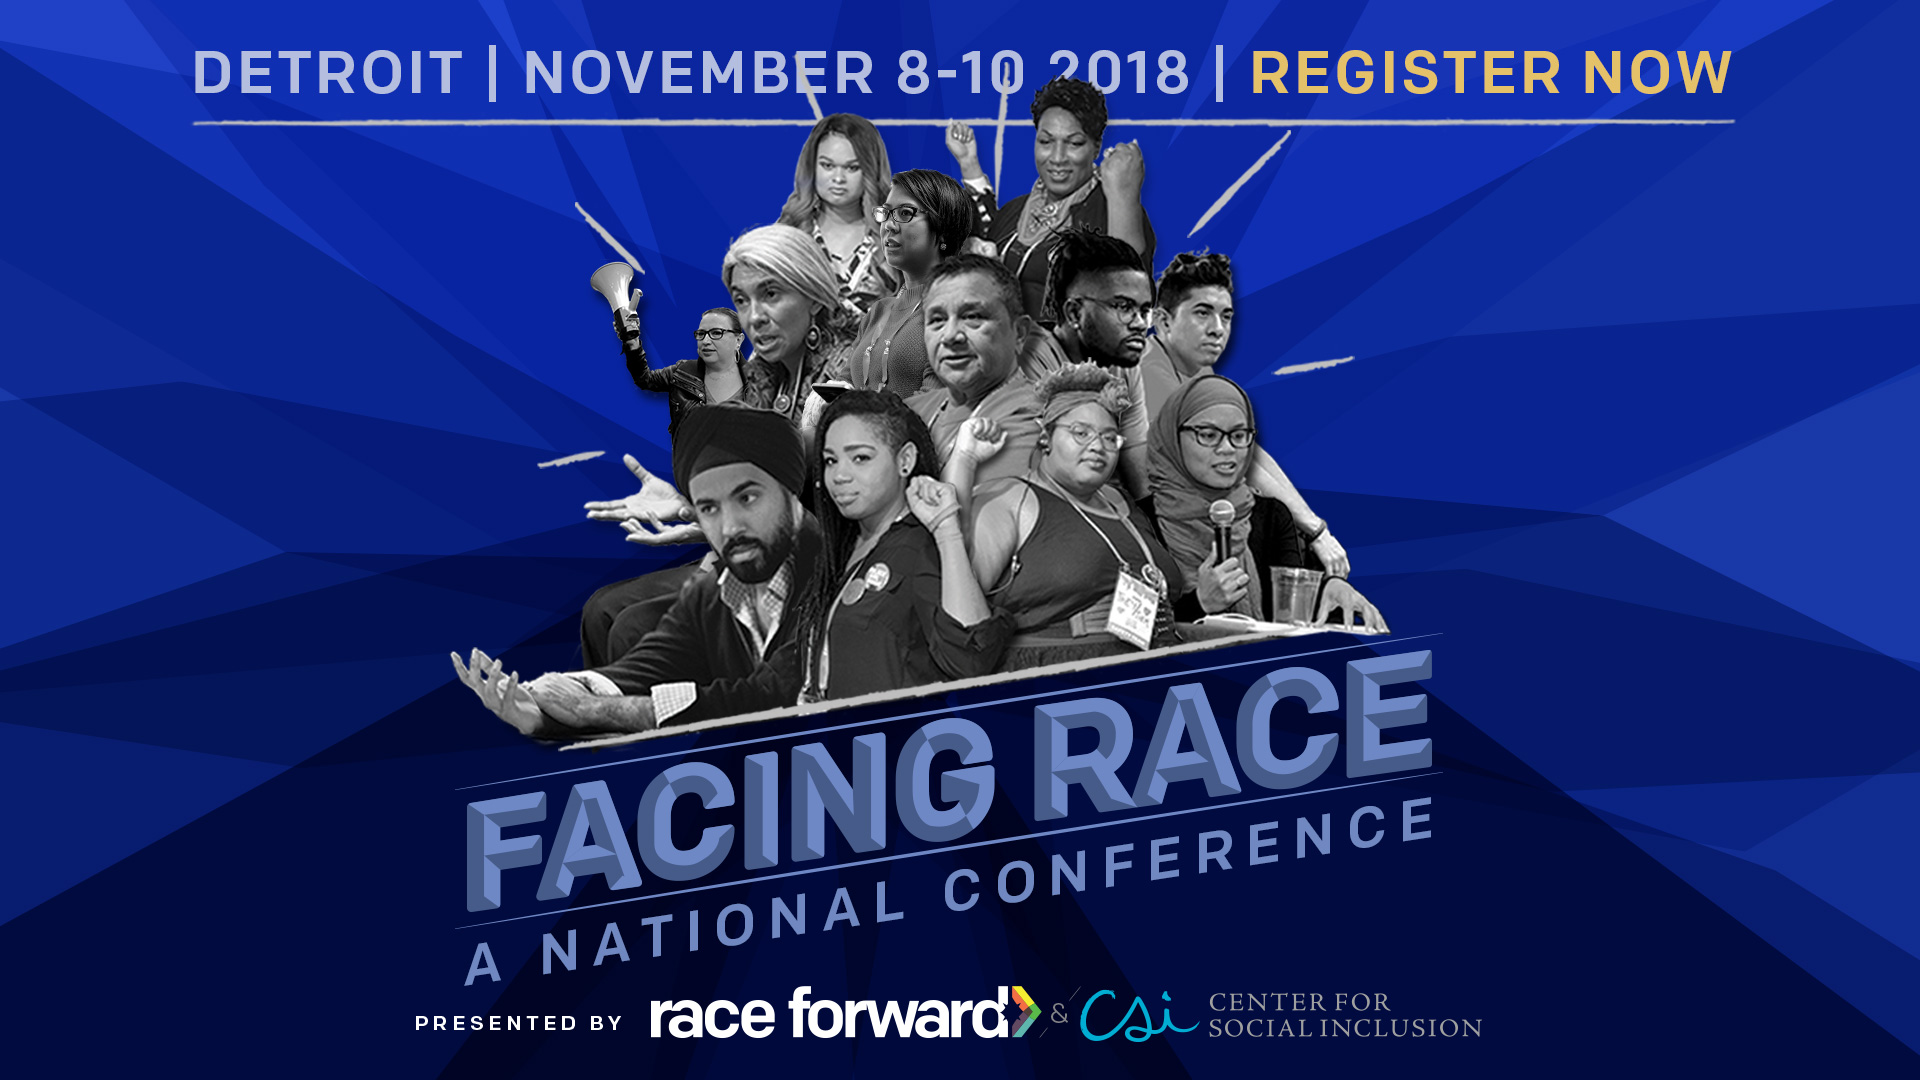 Full “Facing Race” Program Schedule Released!